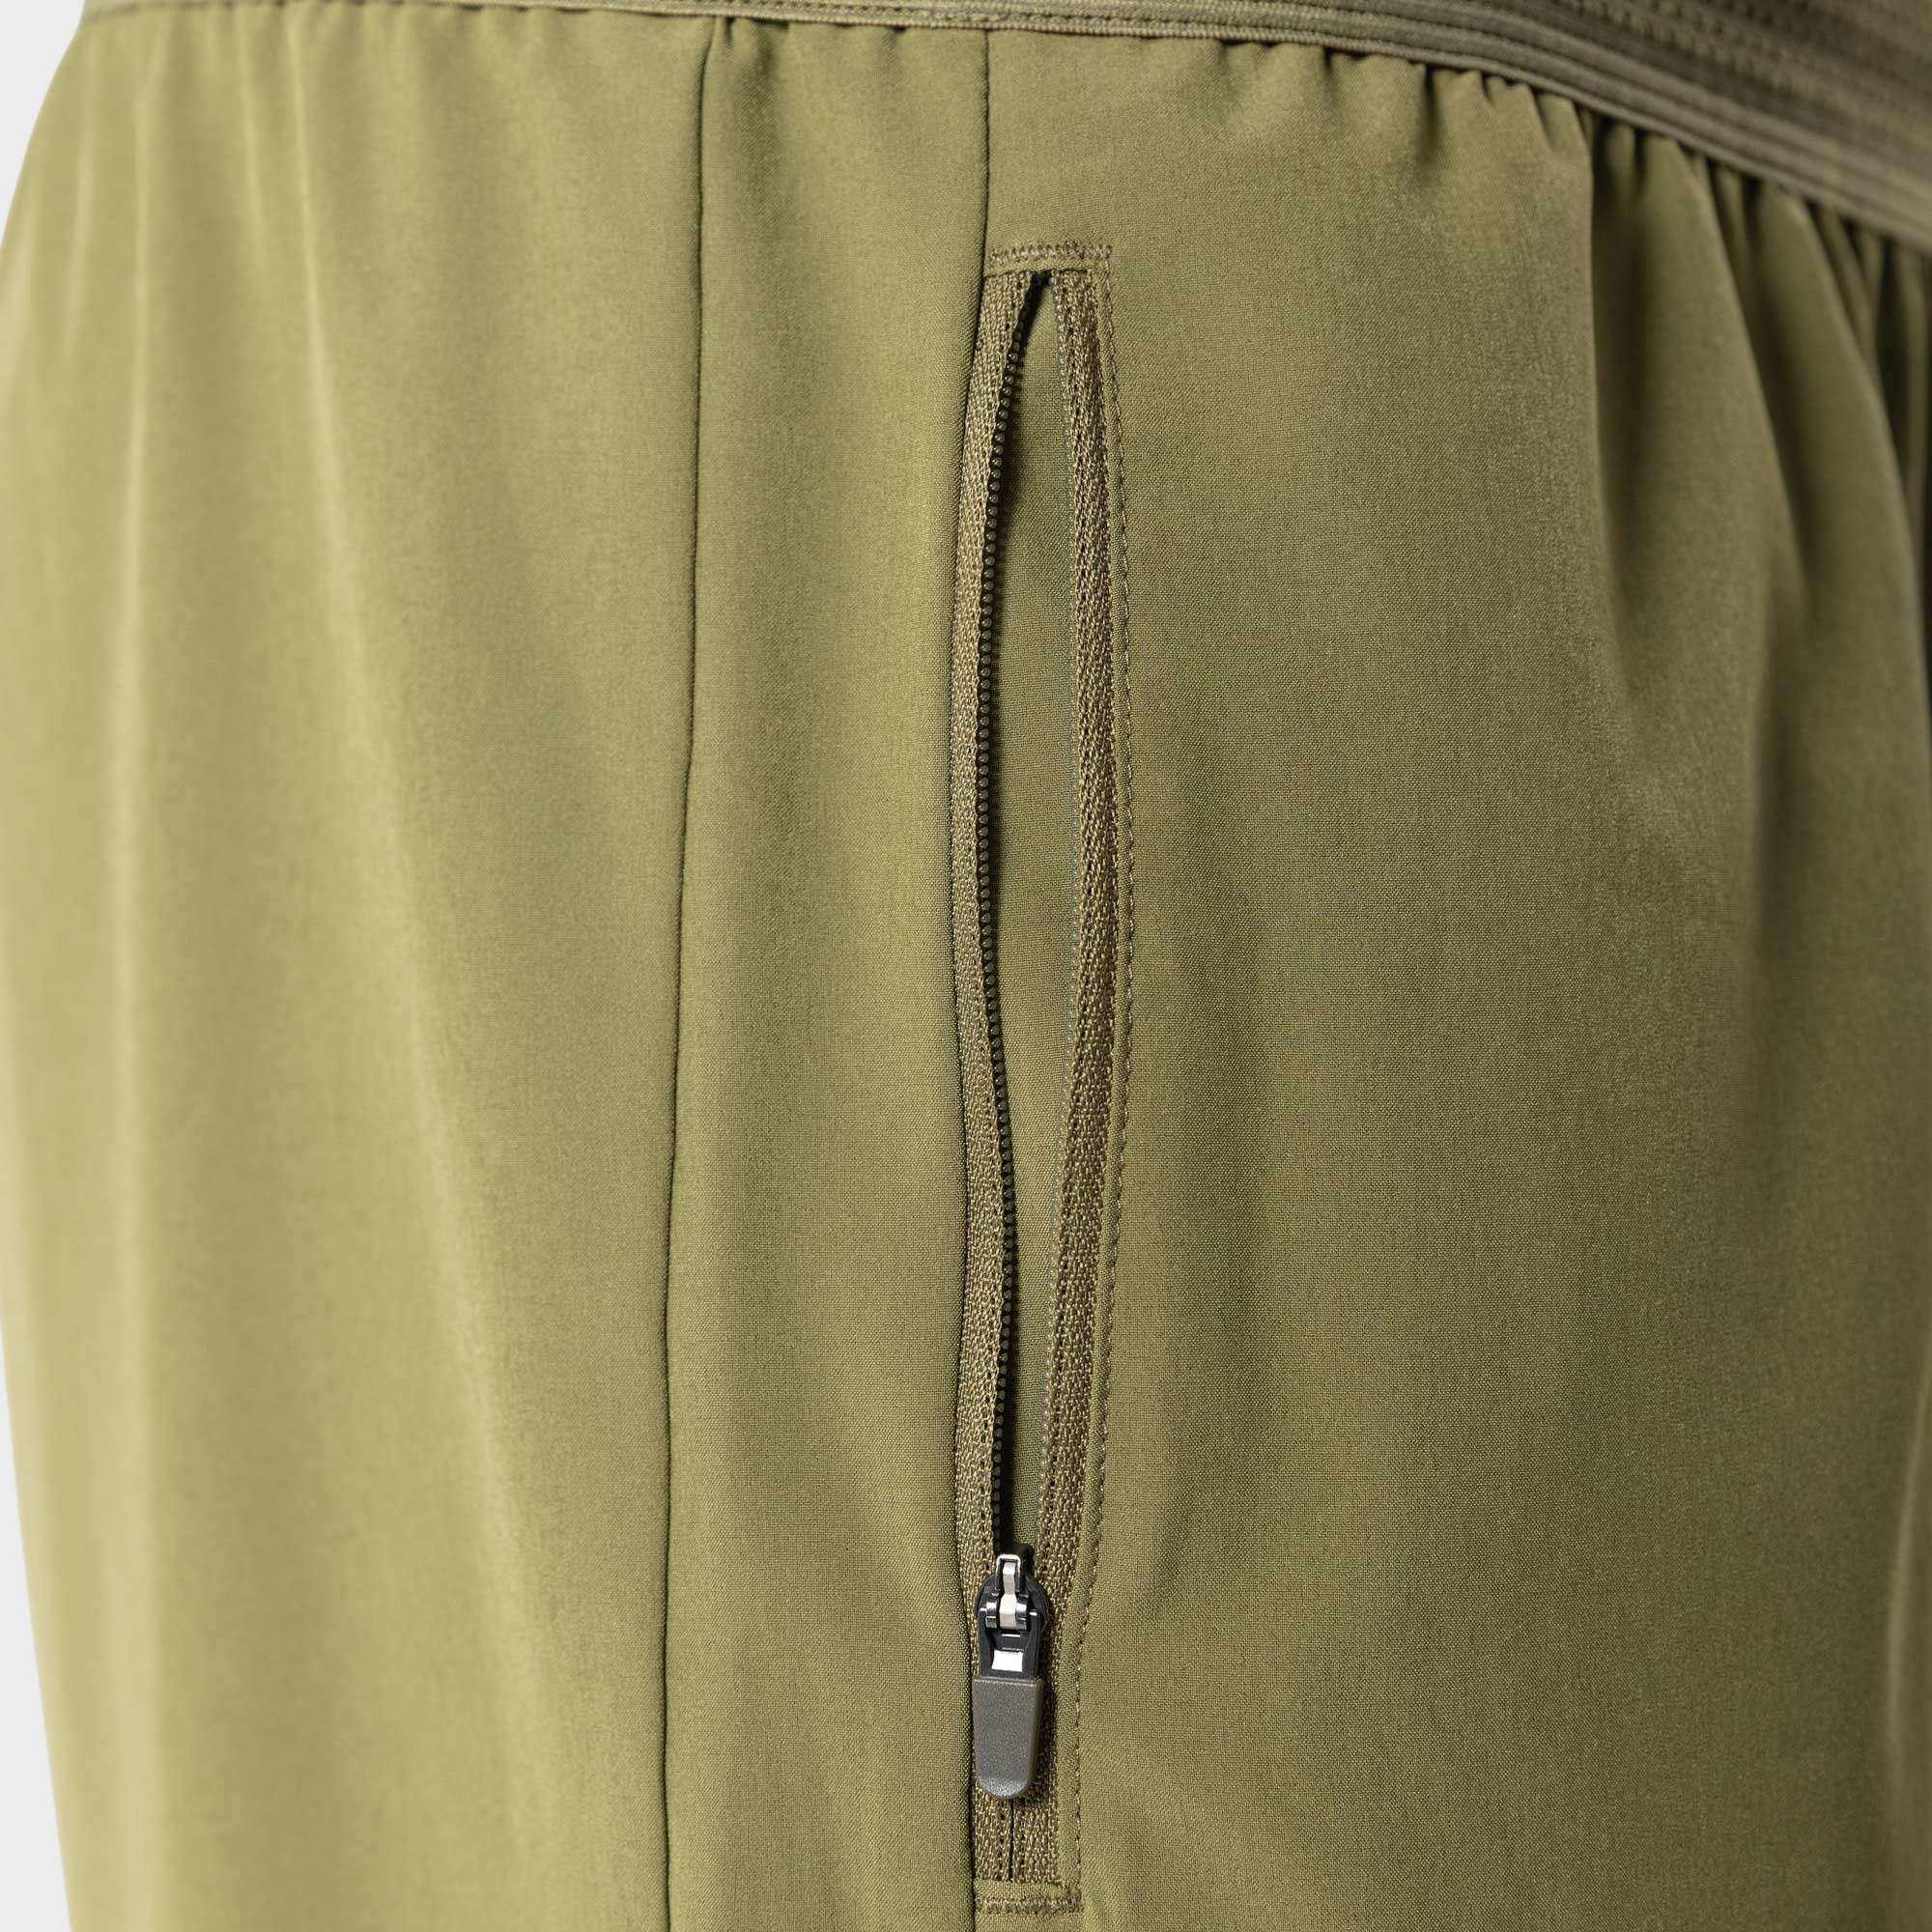 Liiteguard RE-LIITE LONG PANTS (Herre) Trousers Dusty Green